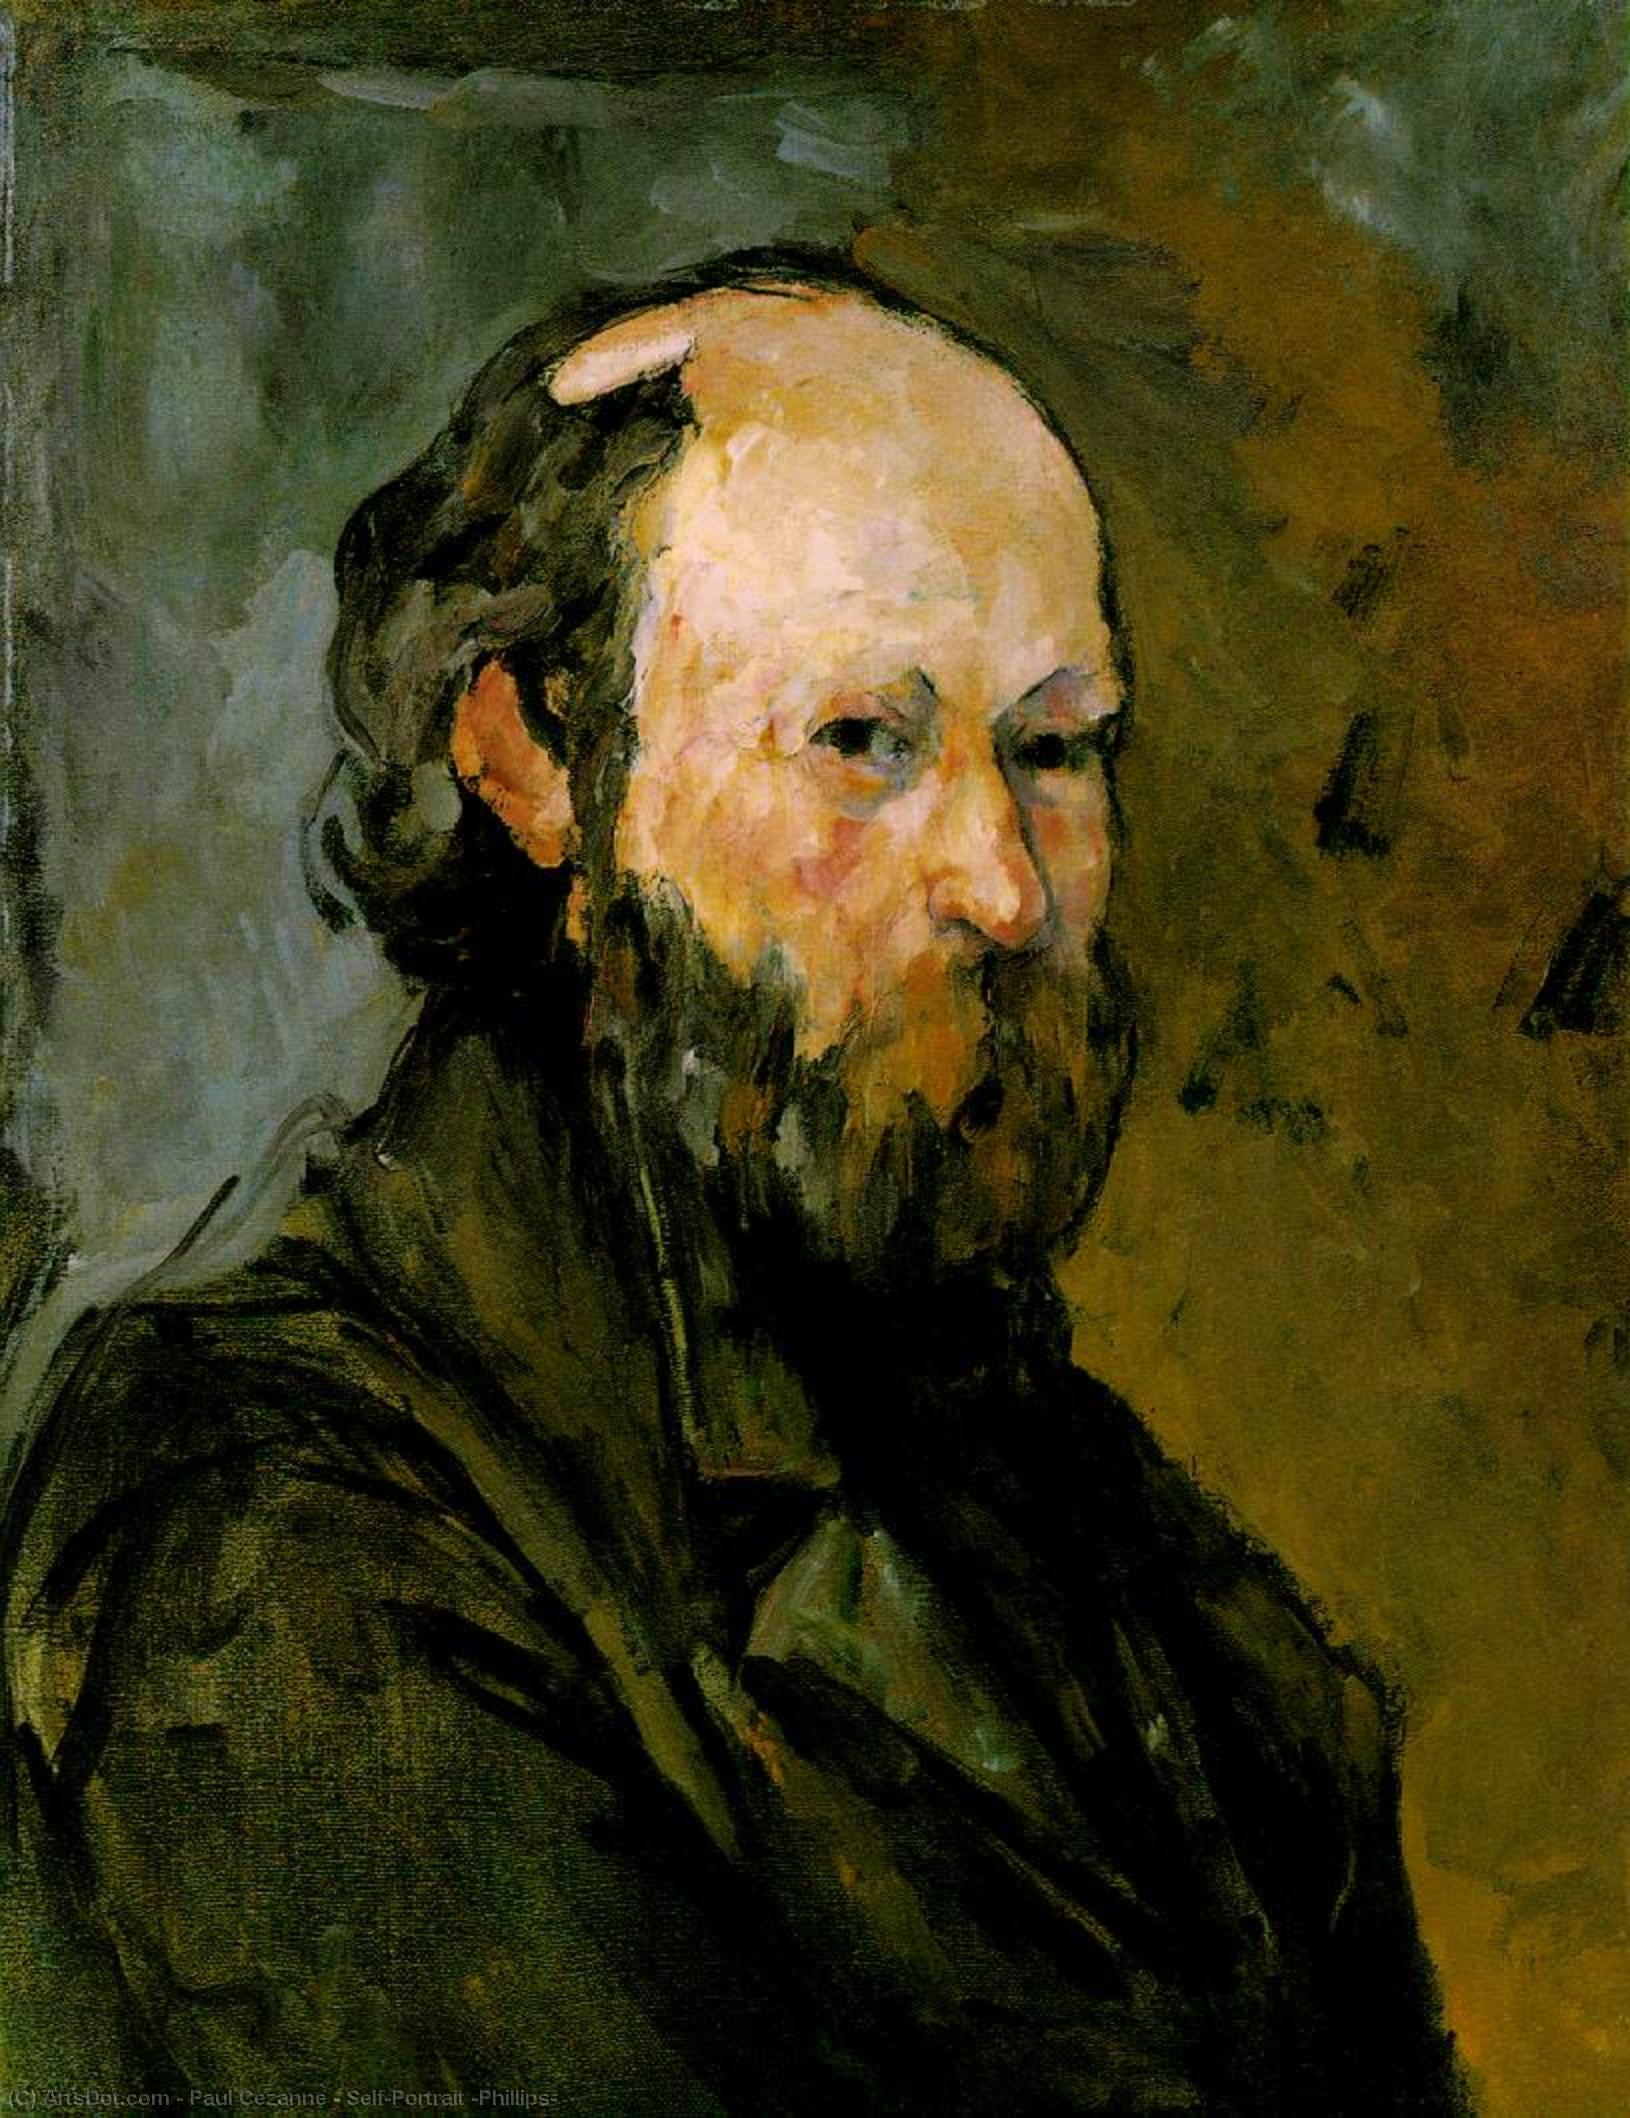 WikiOO.org - 백과 사전 - 회화, 삽화 Paul Cezanne - Self-Portrait (Phillips)